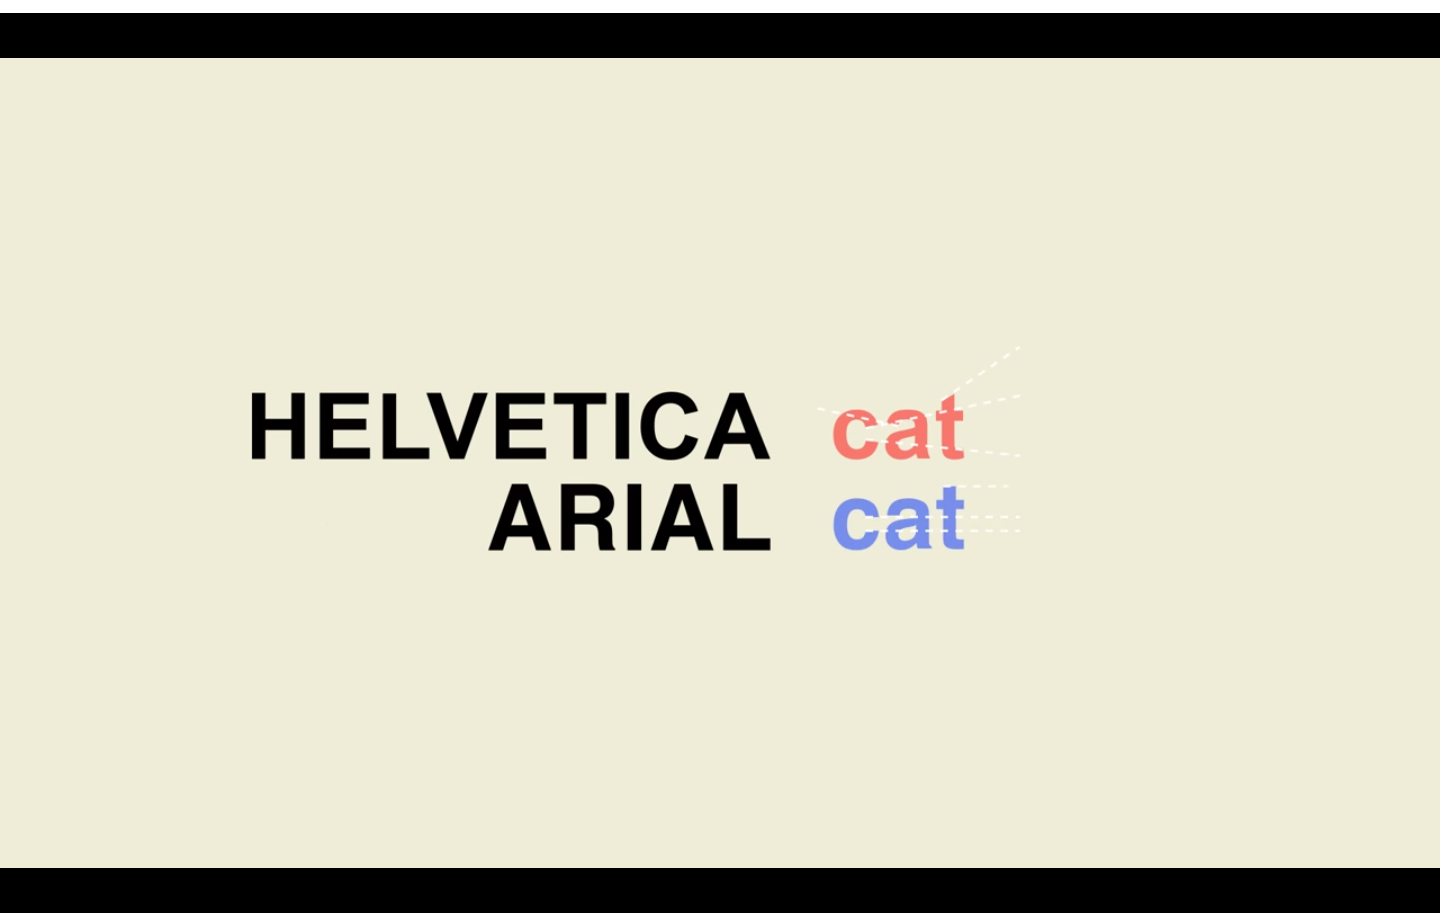 Helvetica vs. Arial